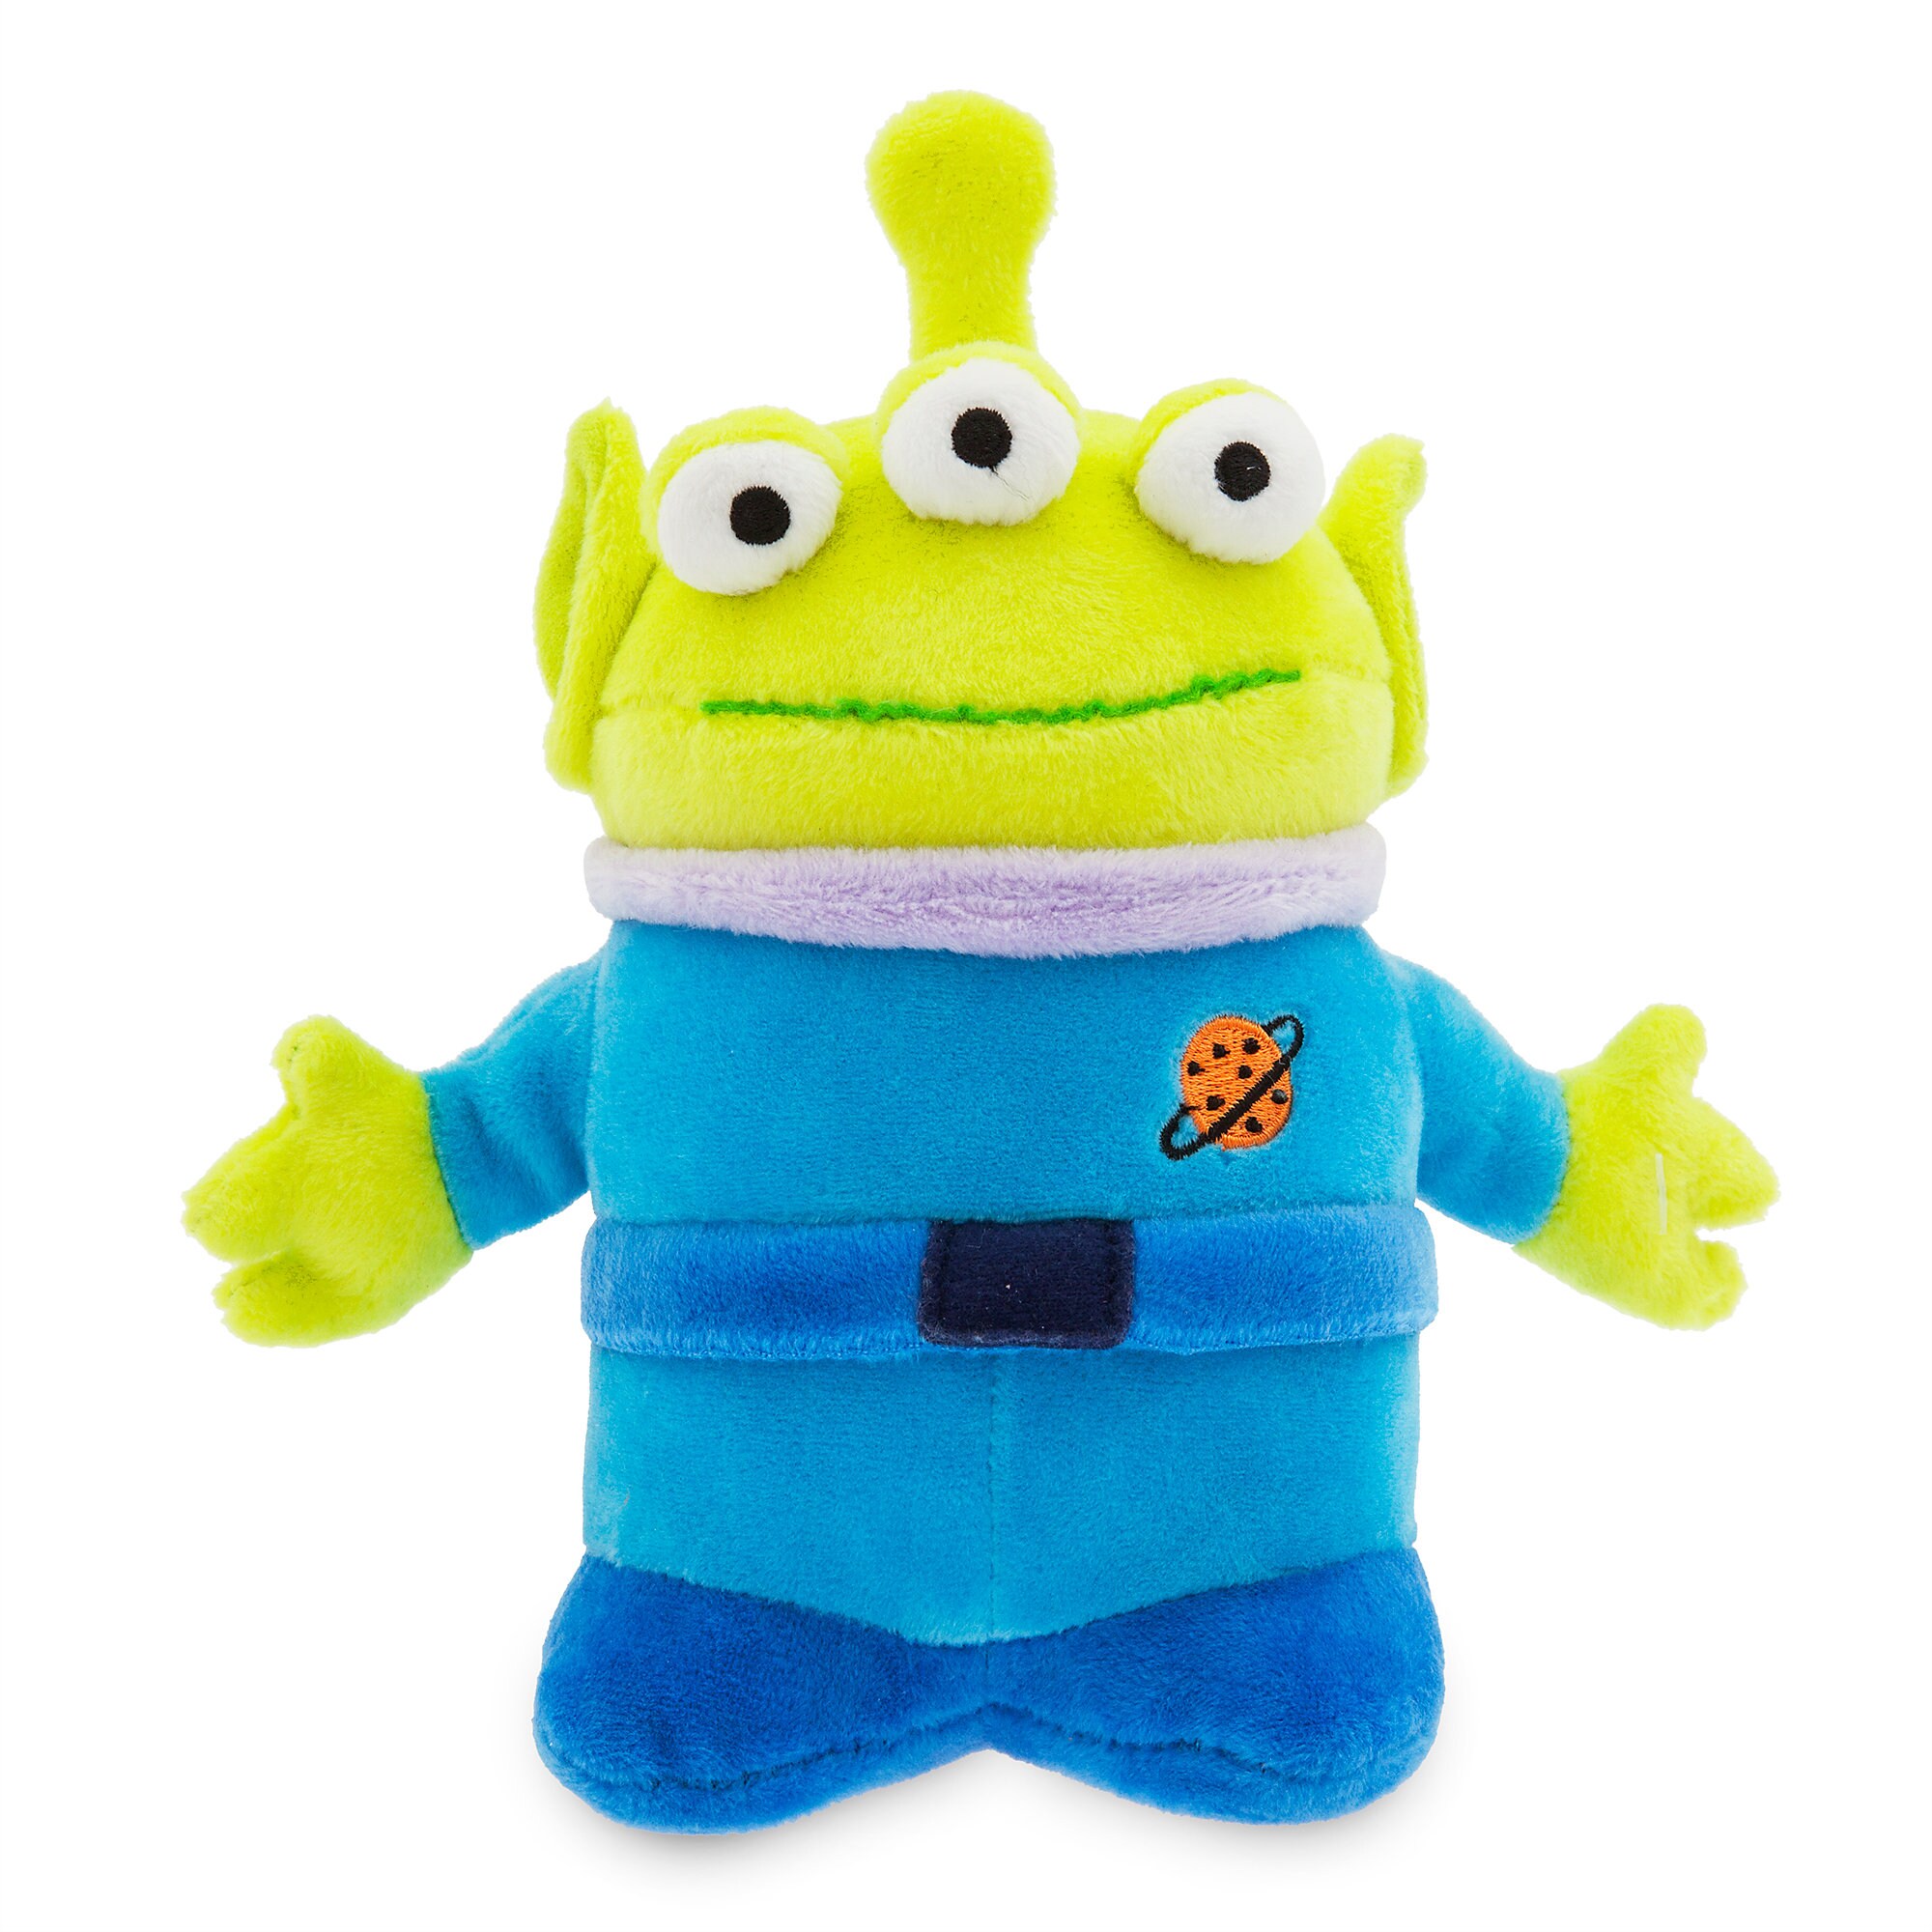 alien cuddly toy